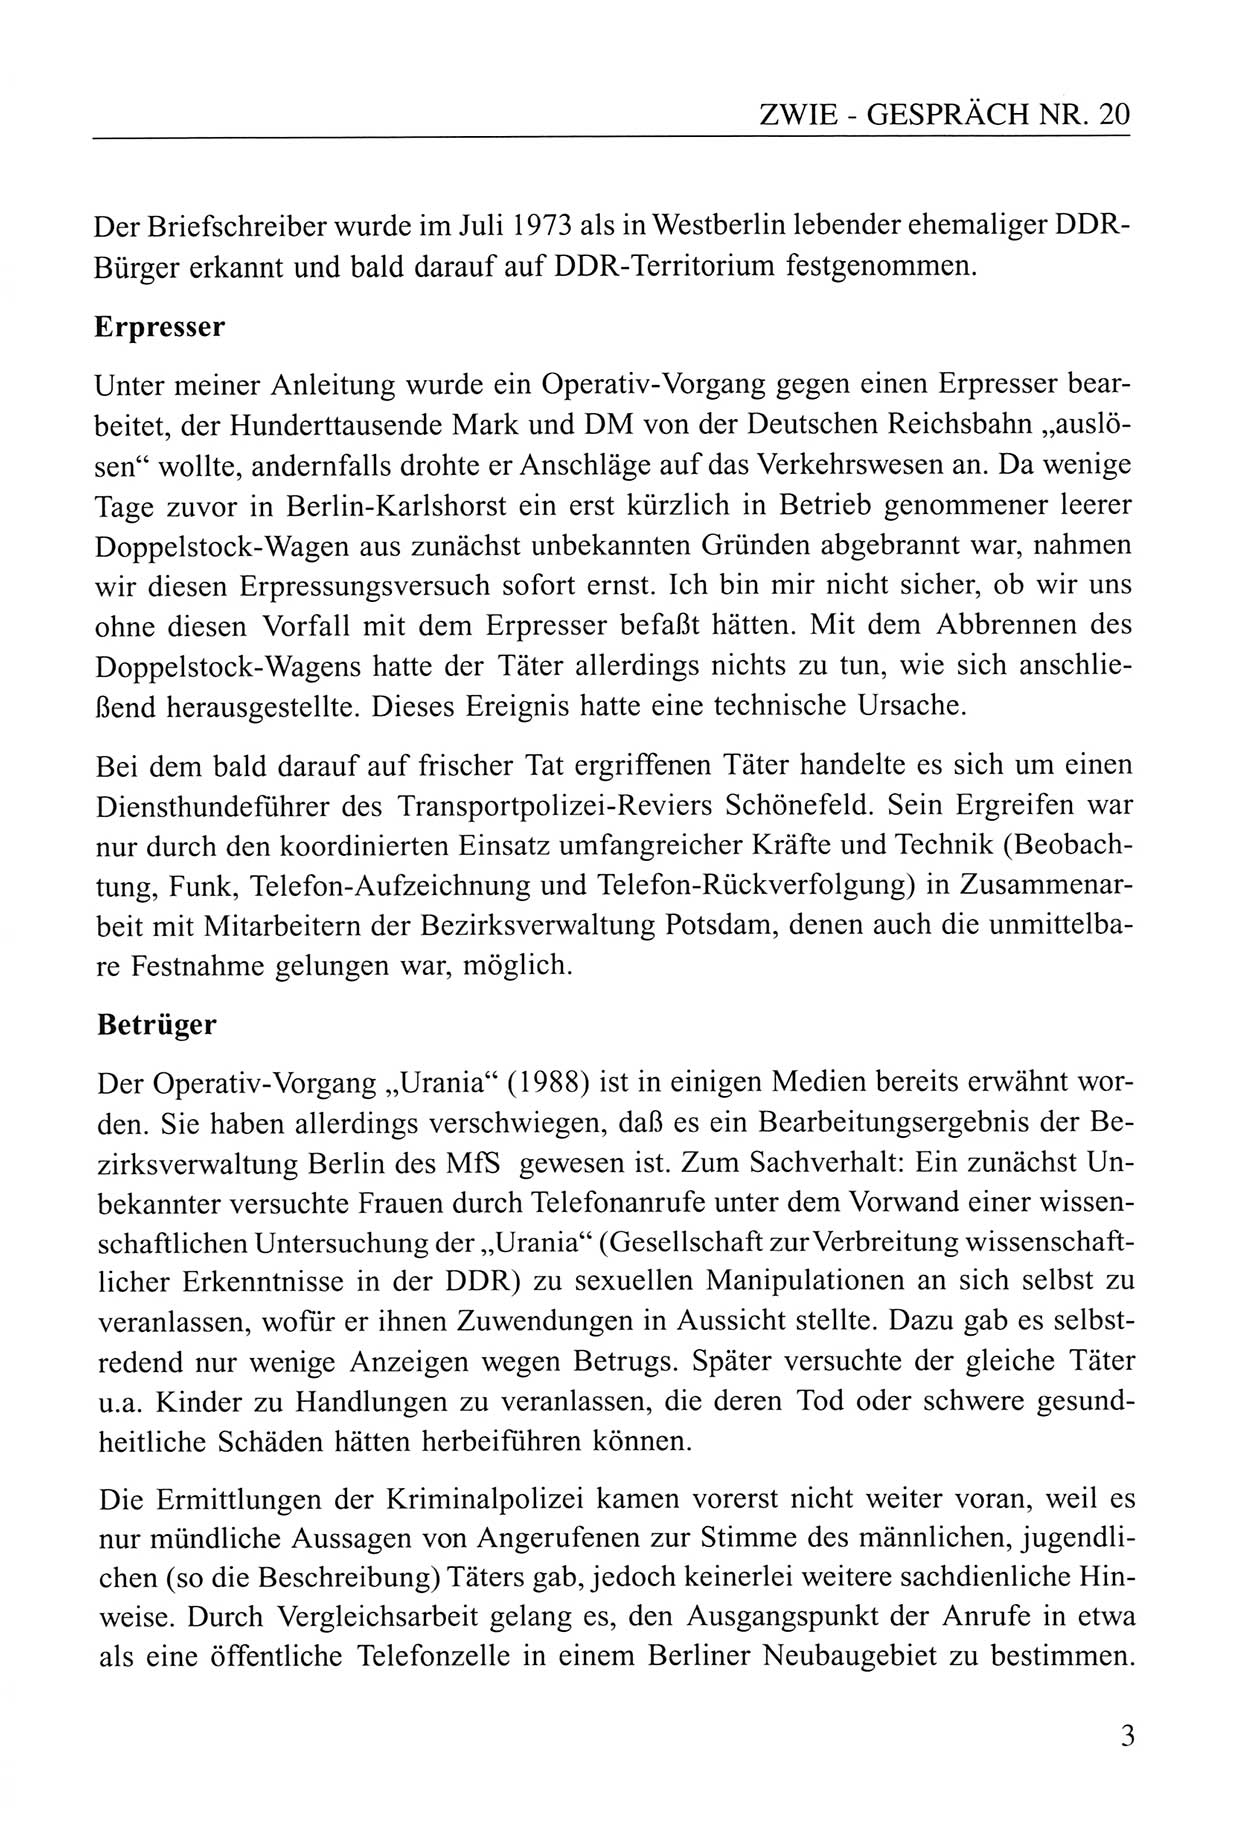 Zwie-Gespräch, Beiträge zum Umgang mit der Staatssicherheits-Vergangenheit [Deutsche Demokratische Republik (DDR)], Ausgabe Nr. 20, Berlin 1994, Seite 3 (Zwie-Gespr. Ausg. 20 1994, S. 3)